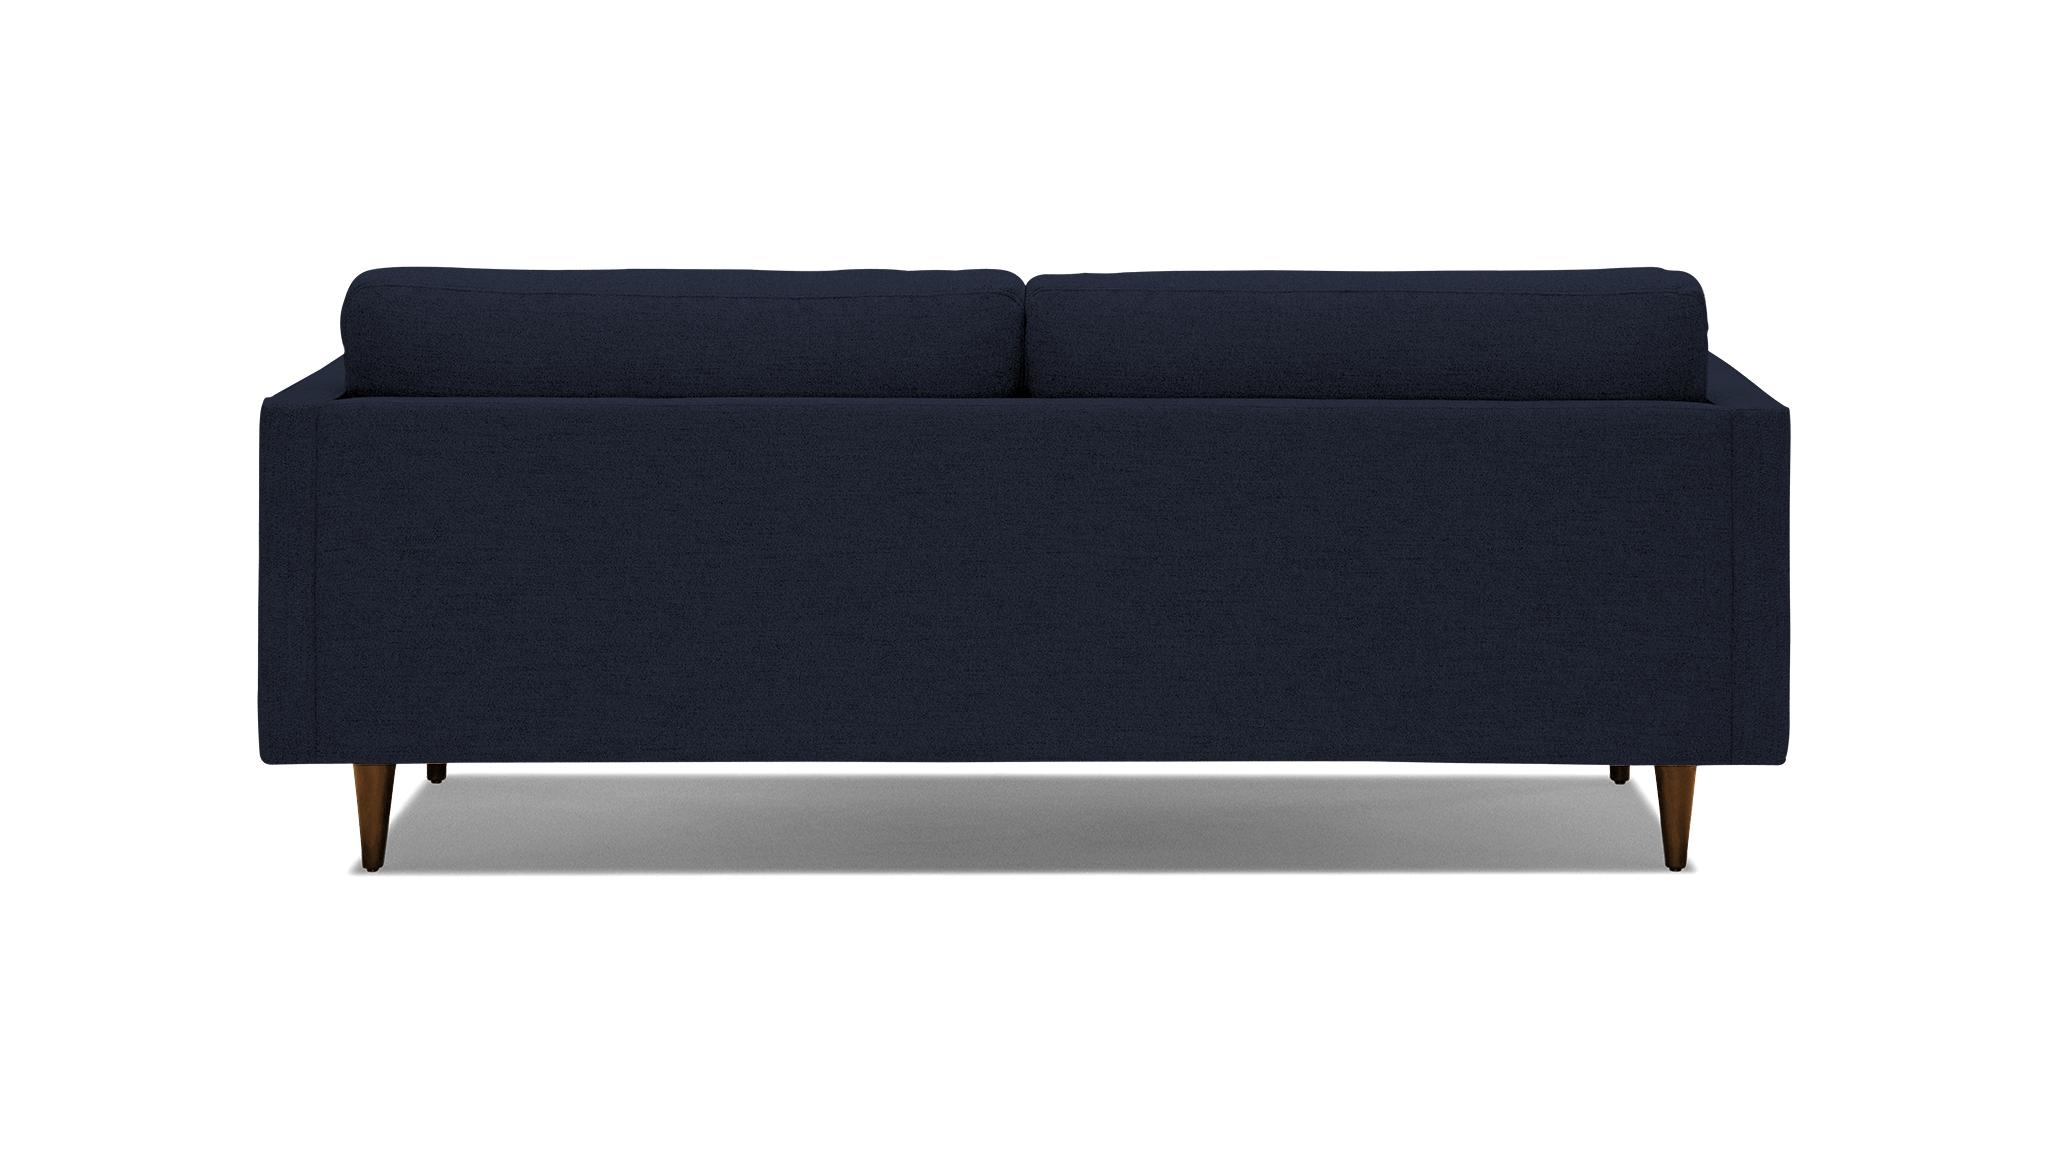 Blue Briar Mid Century Modern Sofa - Sunbrella Premier Indigo - Mocha - Image 4